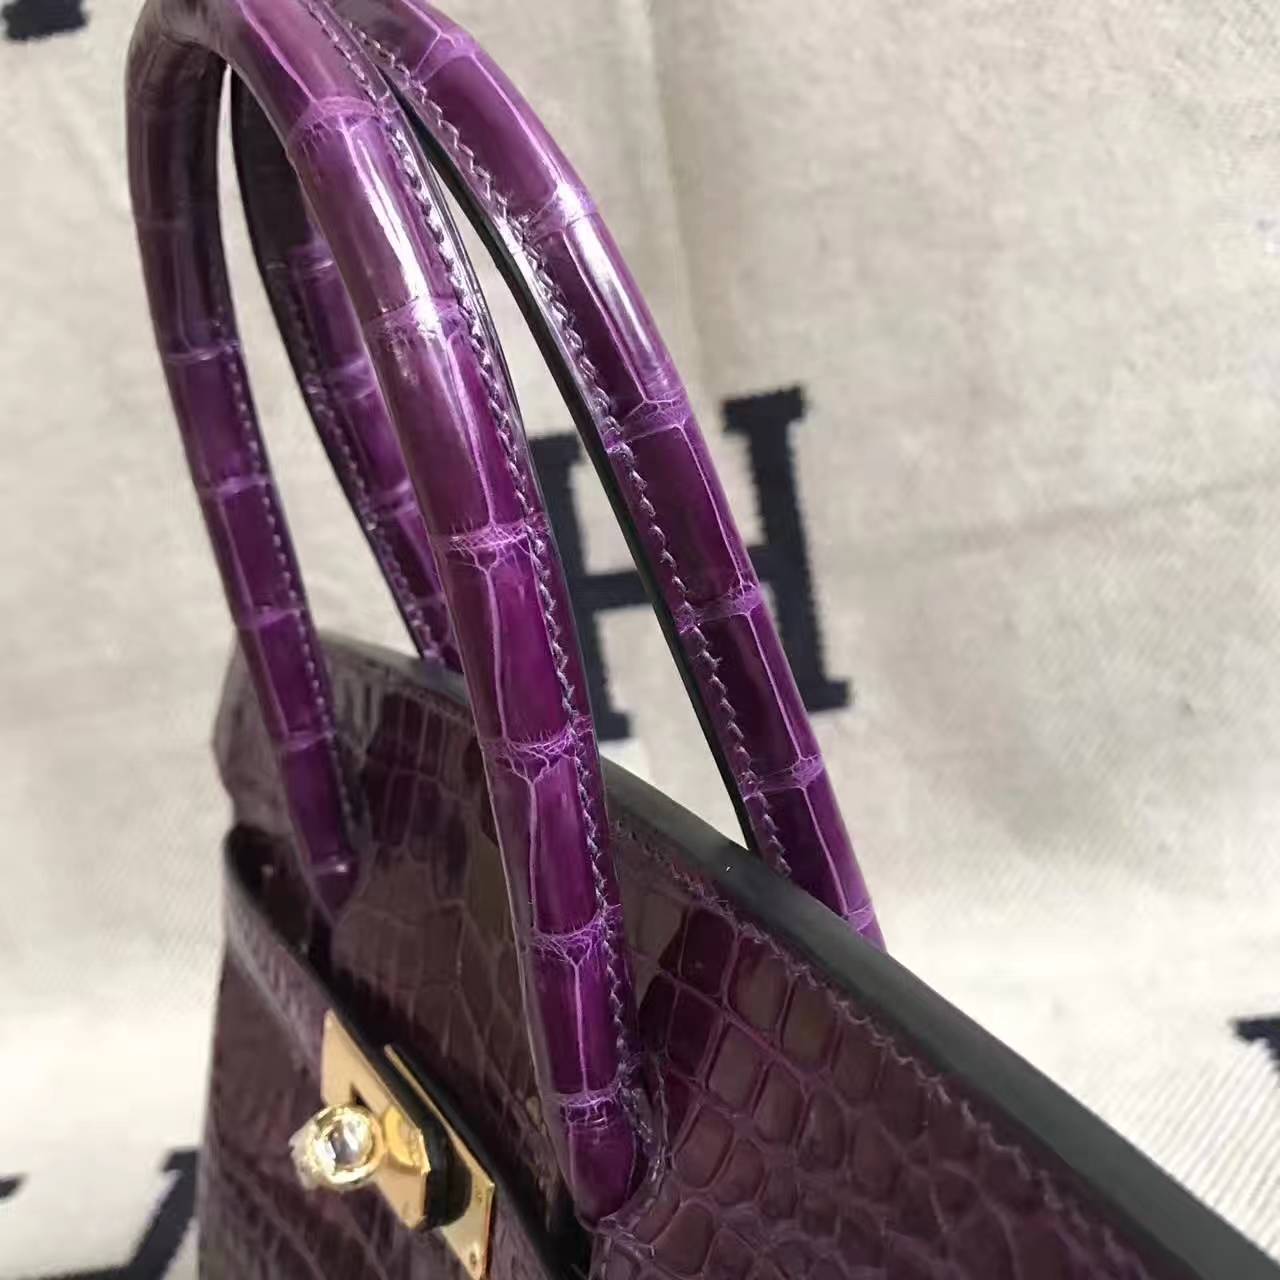 New Arrival Hermes Porosus Shiny Leather Birkin Bag 30cm in 5C Violet